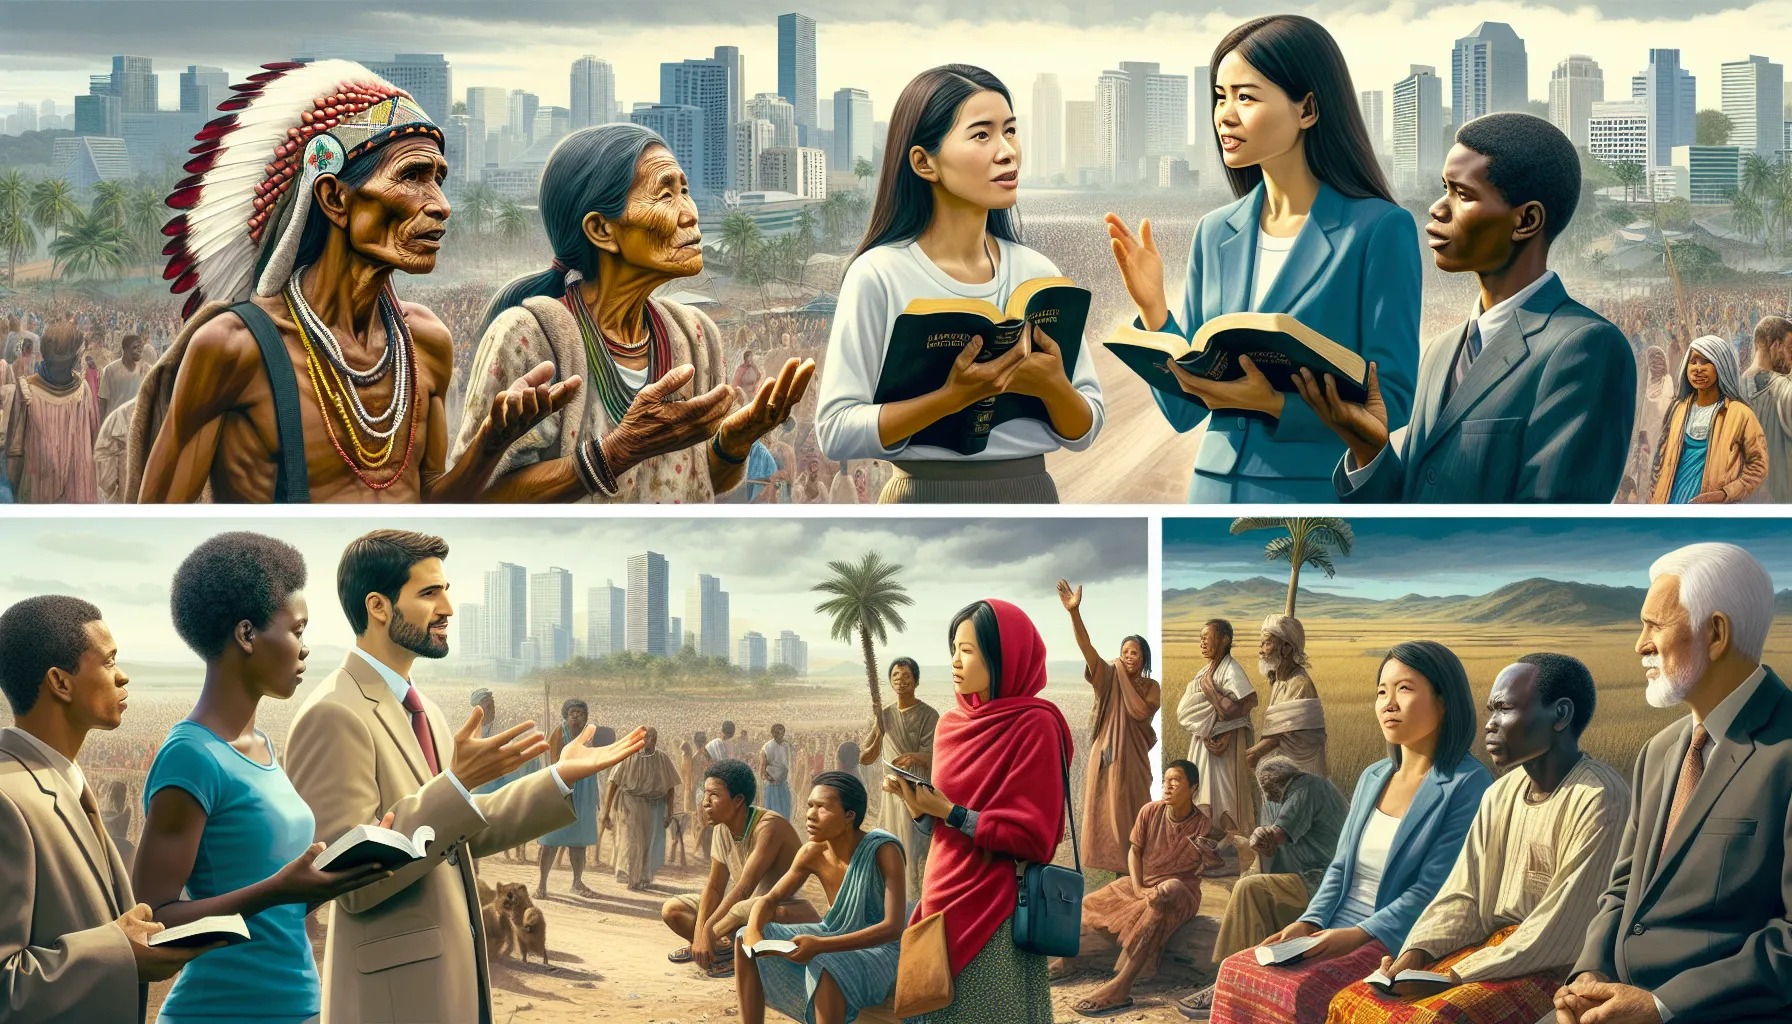 Imagen representando misioneros cristianos evangelizando en diferentes partes del mundo'.